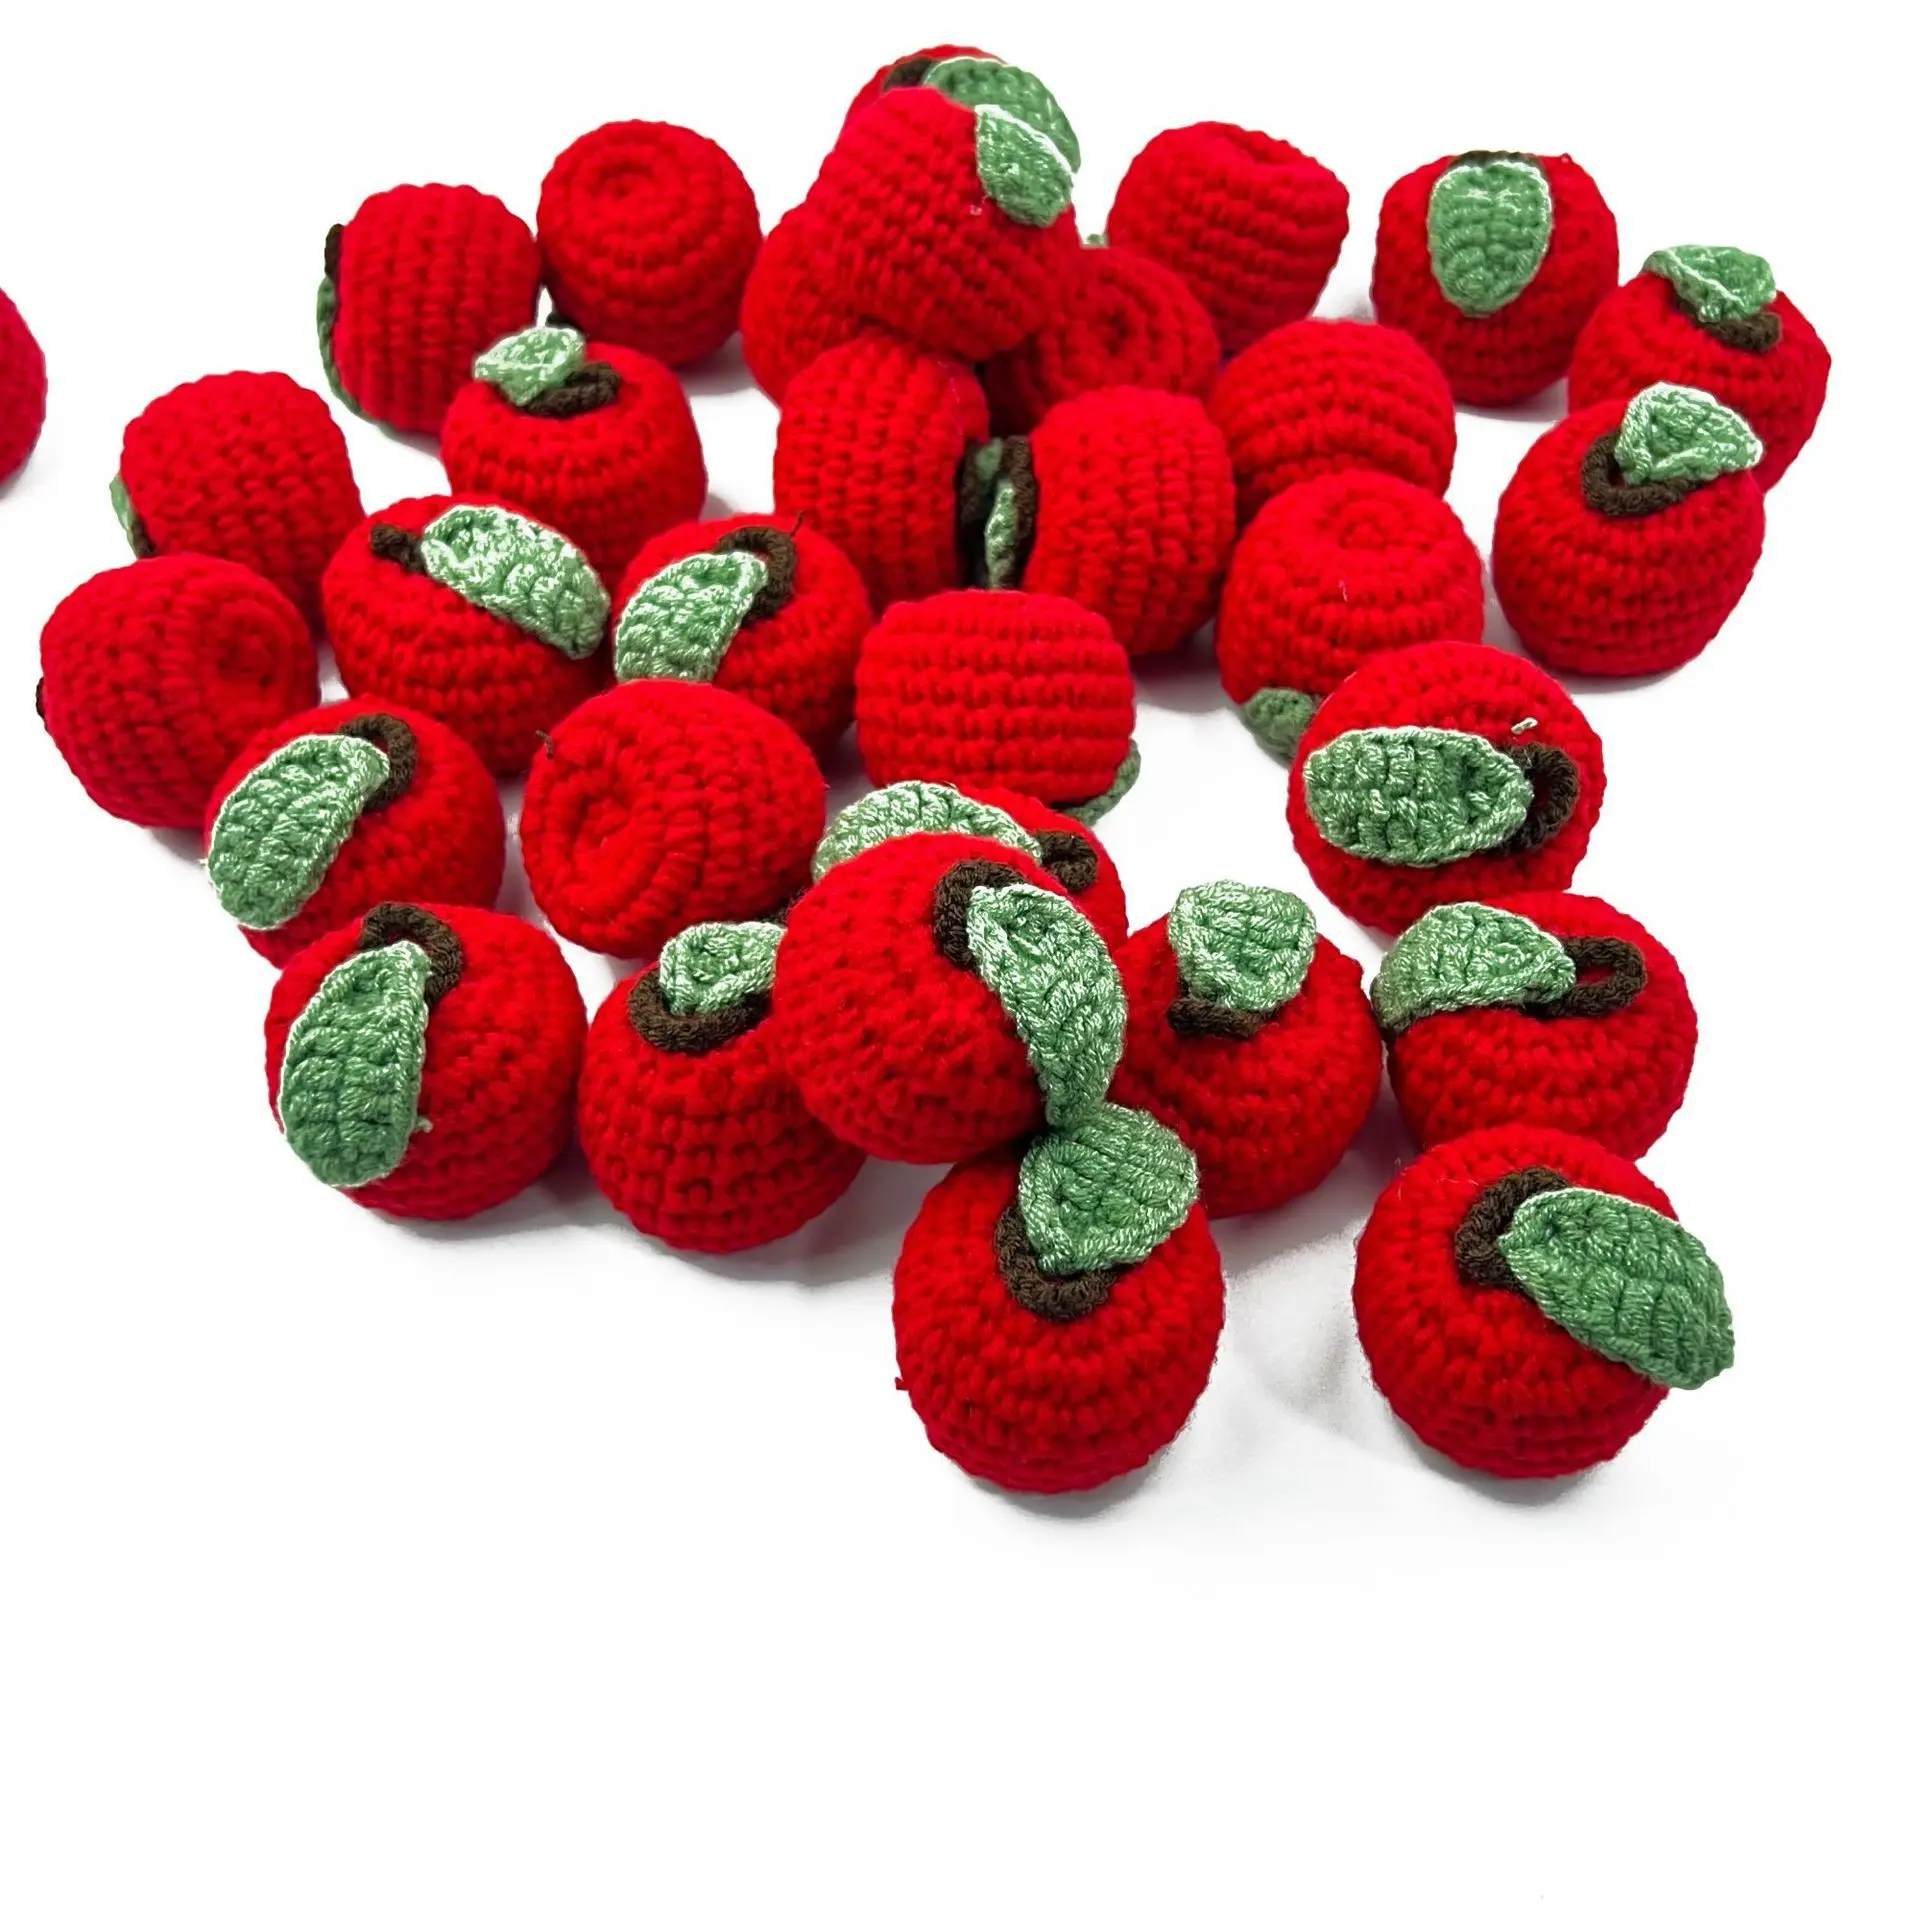 Loja de crochê artesanal de amigurumi de crochê criativo de frutas de crochê com desenhos animados fofos